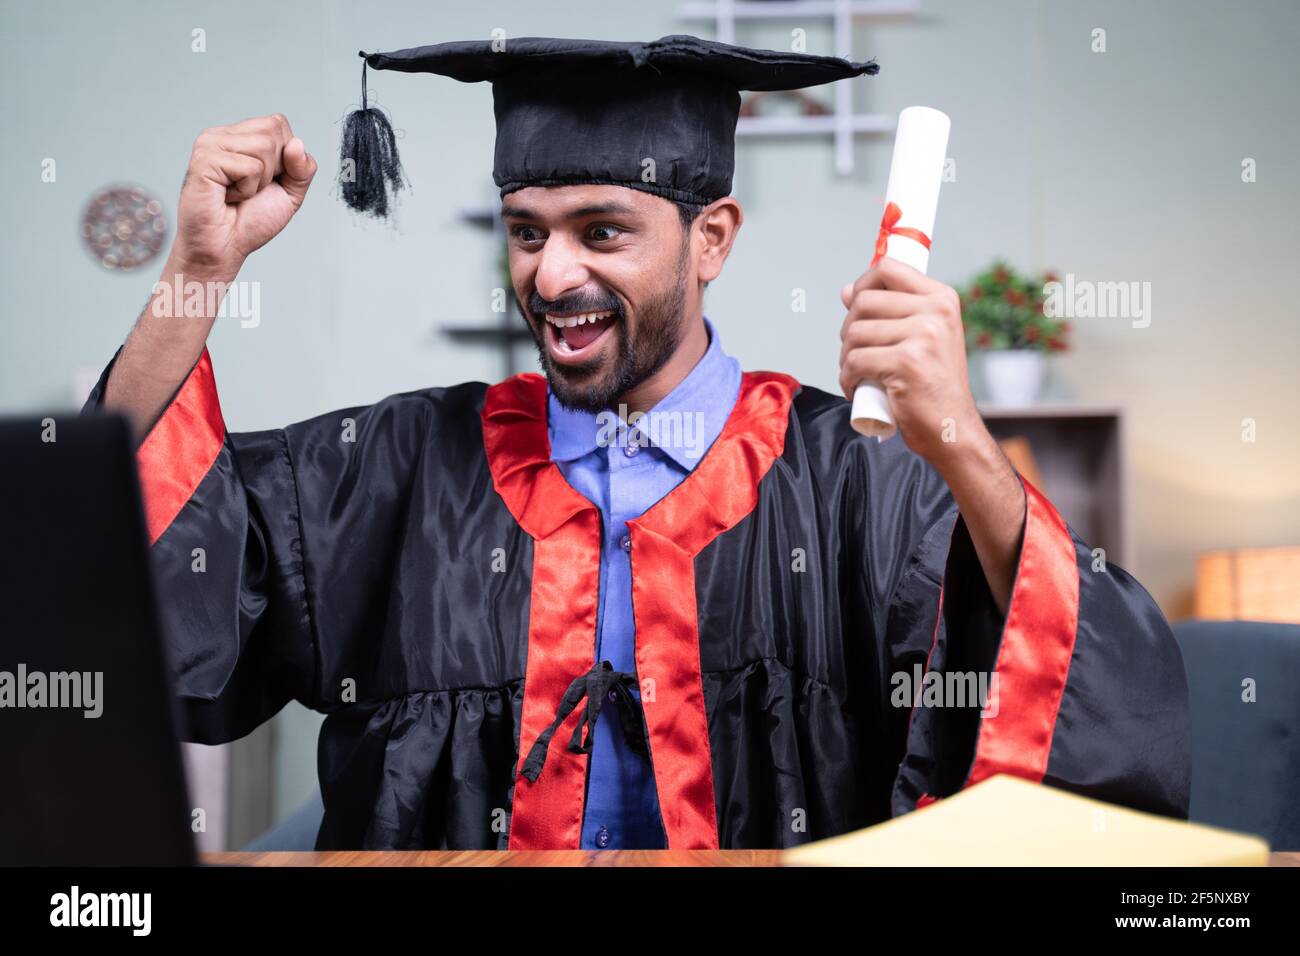 Un hombre joven se emocionó por anunciar los nombres de graduación a través de la videollamada mientras que la celebración de certificado - concepto de graduación virtual nuevo normal debido a covid-19 Foto de stock